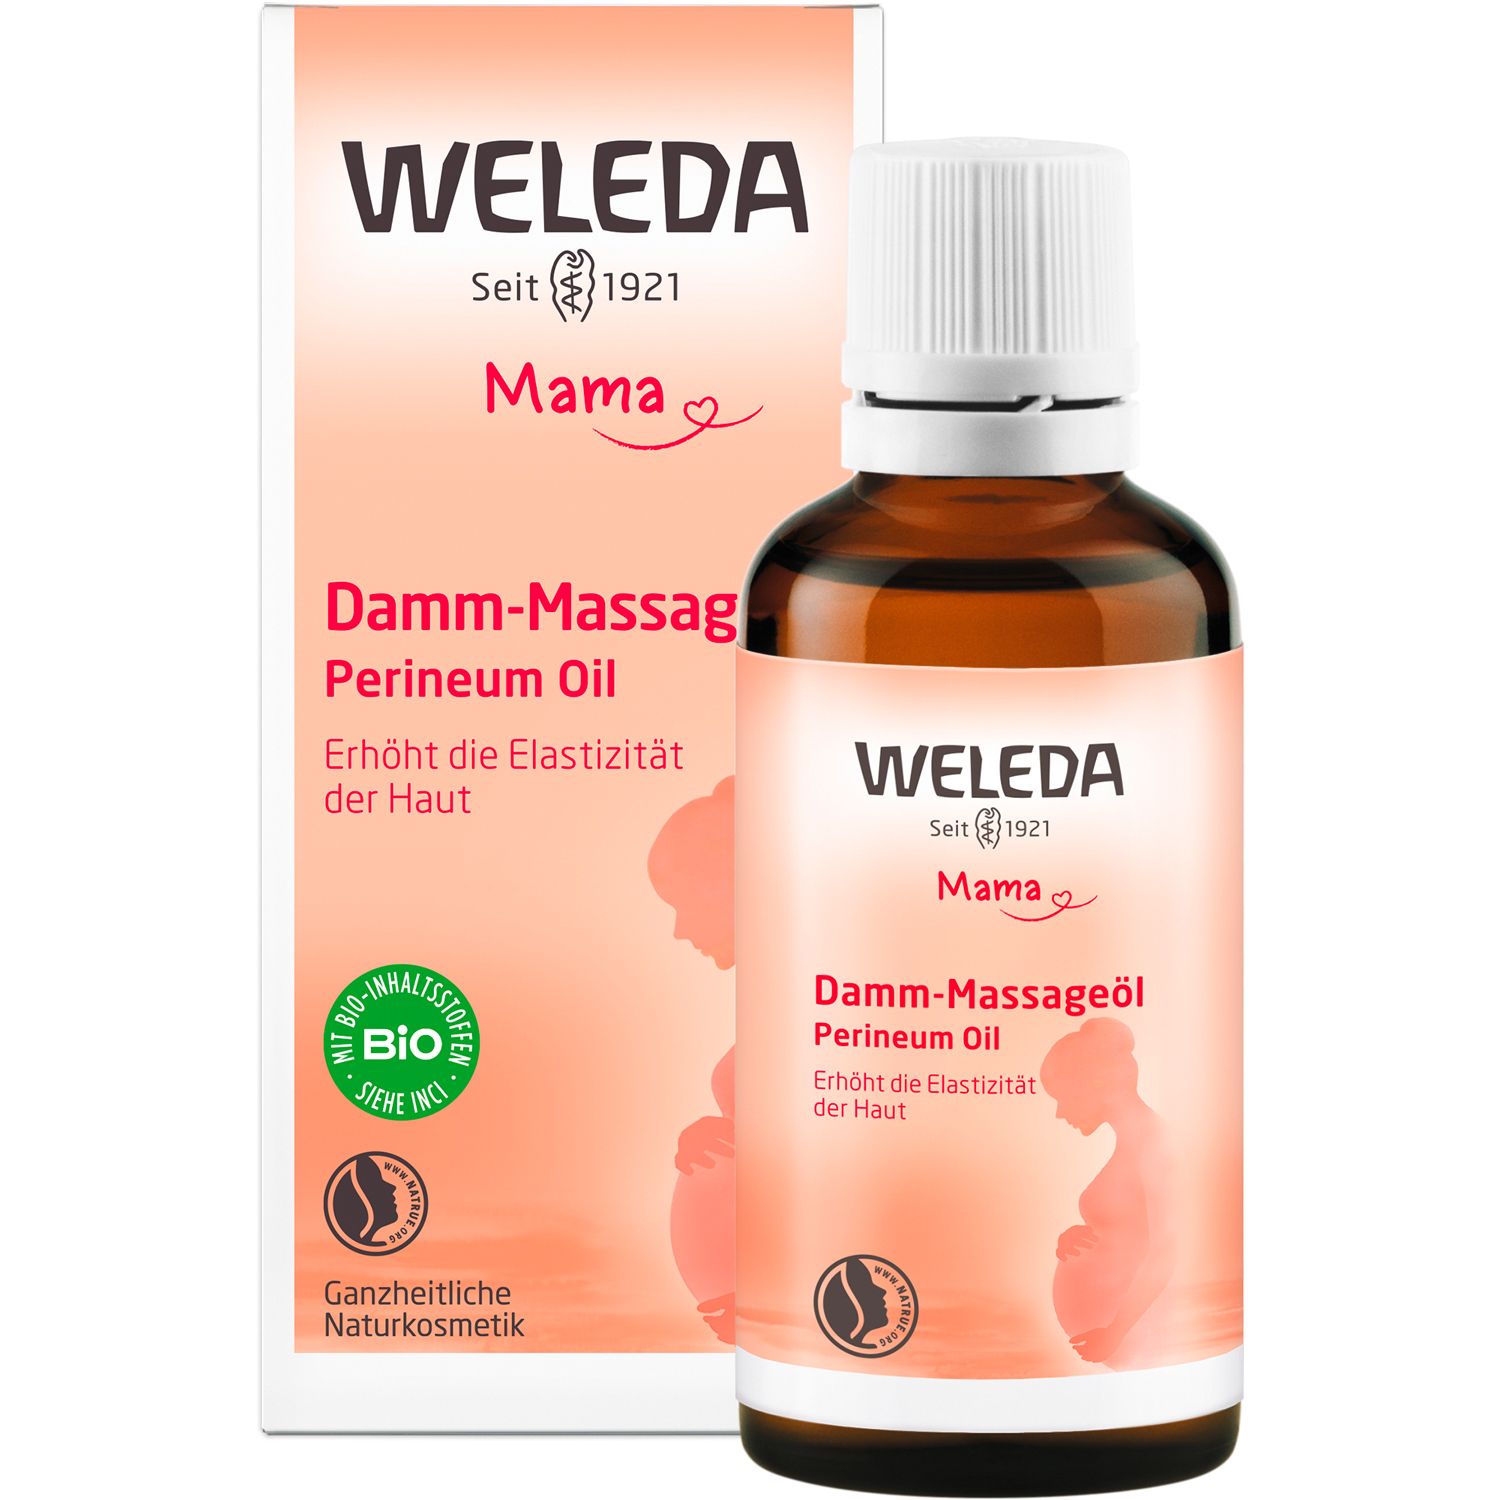 Weleda Damm-Massageöl - lockert & dehnt durch regelmäßige Massagen die Haut, für mehr Elastizität